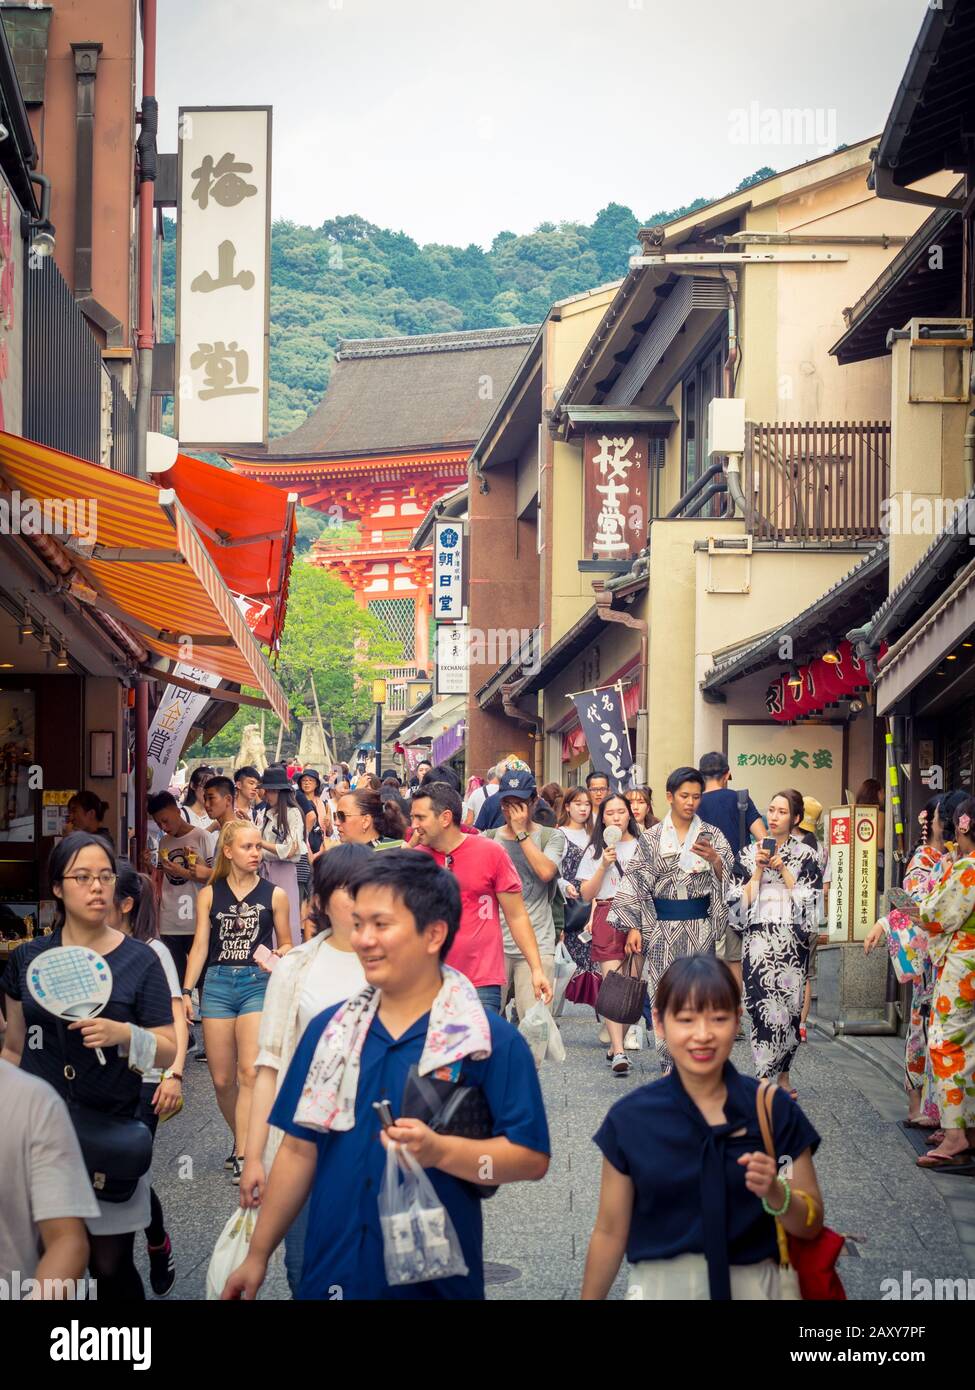 Tiendas, multitudes y turistas de Matsubara Dori (Matsubara Dori) cerca de la calle templo Kiyomizudera en el Distrito Higashiyama de Kyoto, Japón. Foto de stock